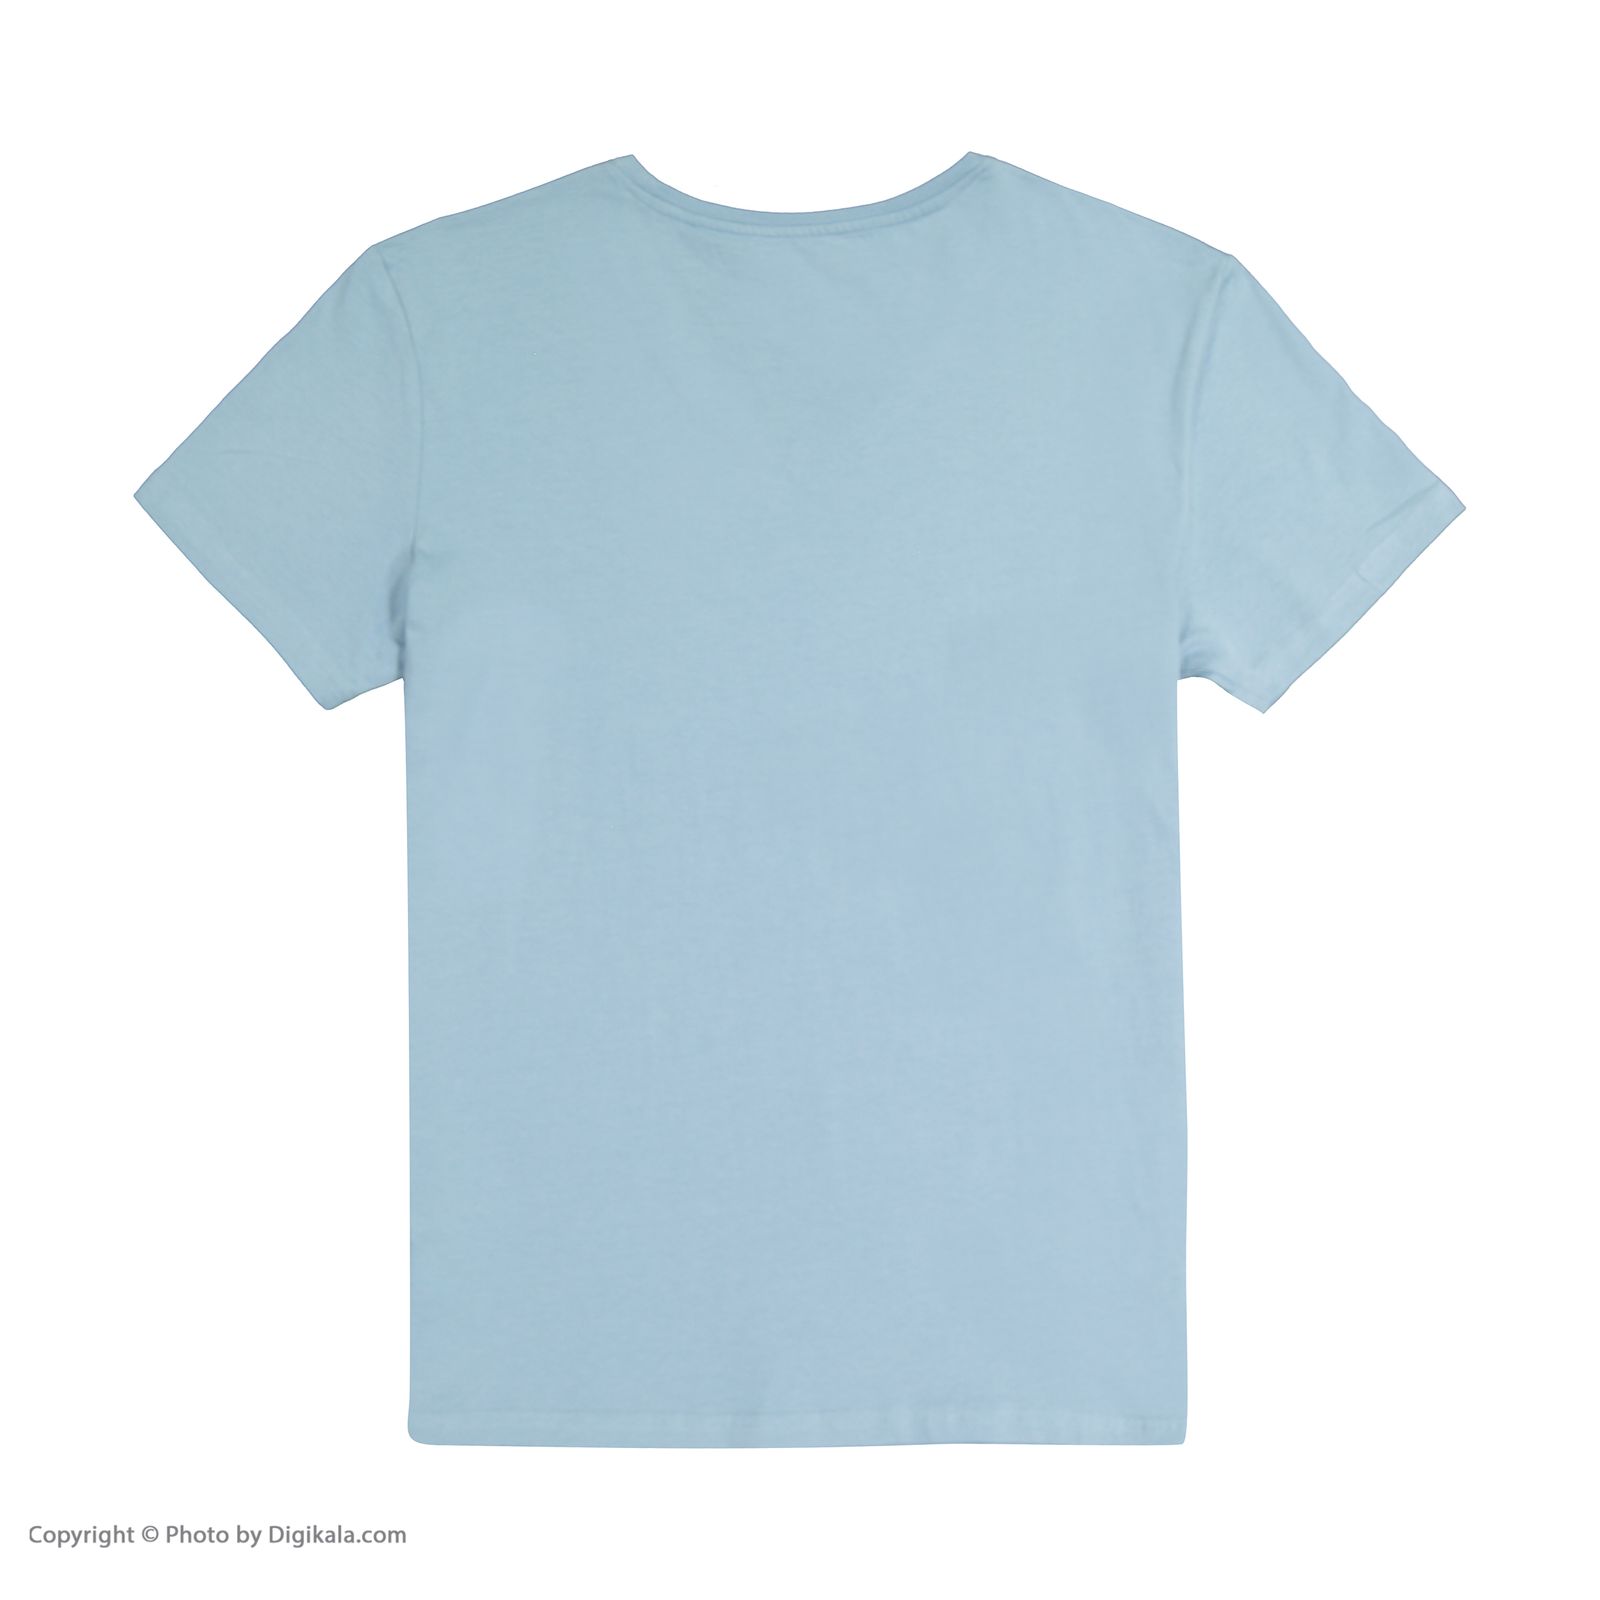 تی شرت مردانه کالینز مدل CLTKTMTSH0212440-LBL